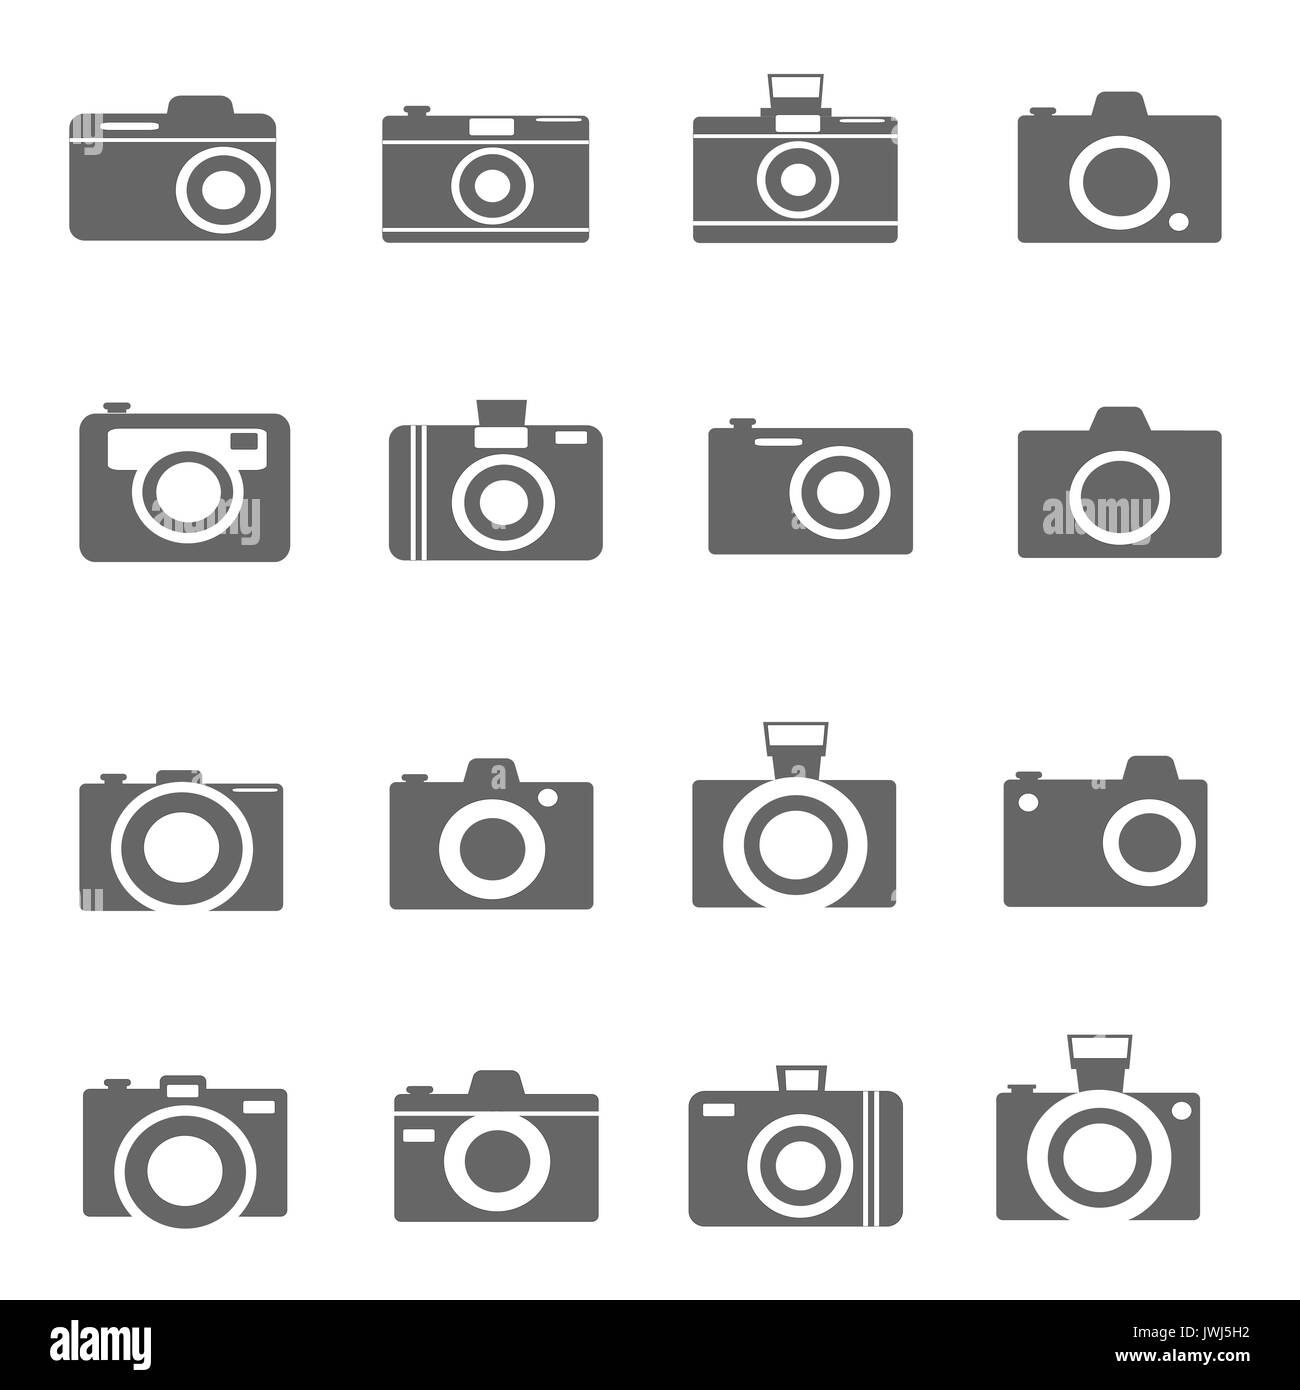 Les icônes d'appareil photo vector Banque D'Images